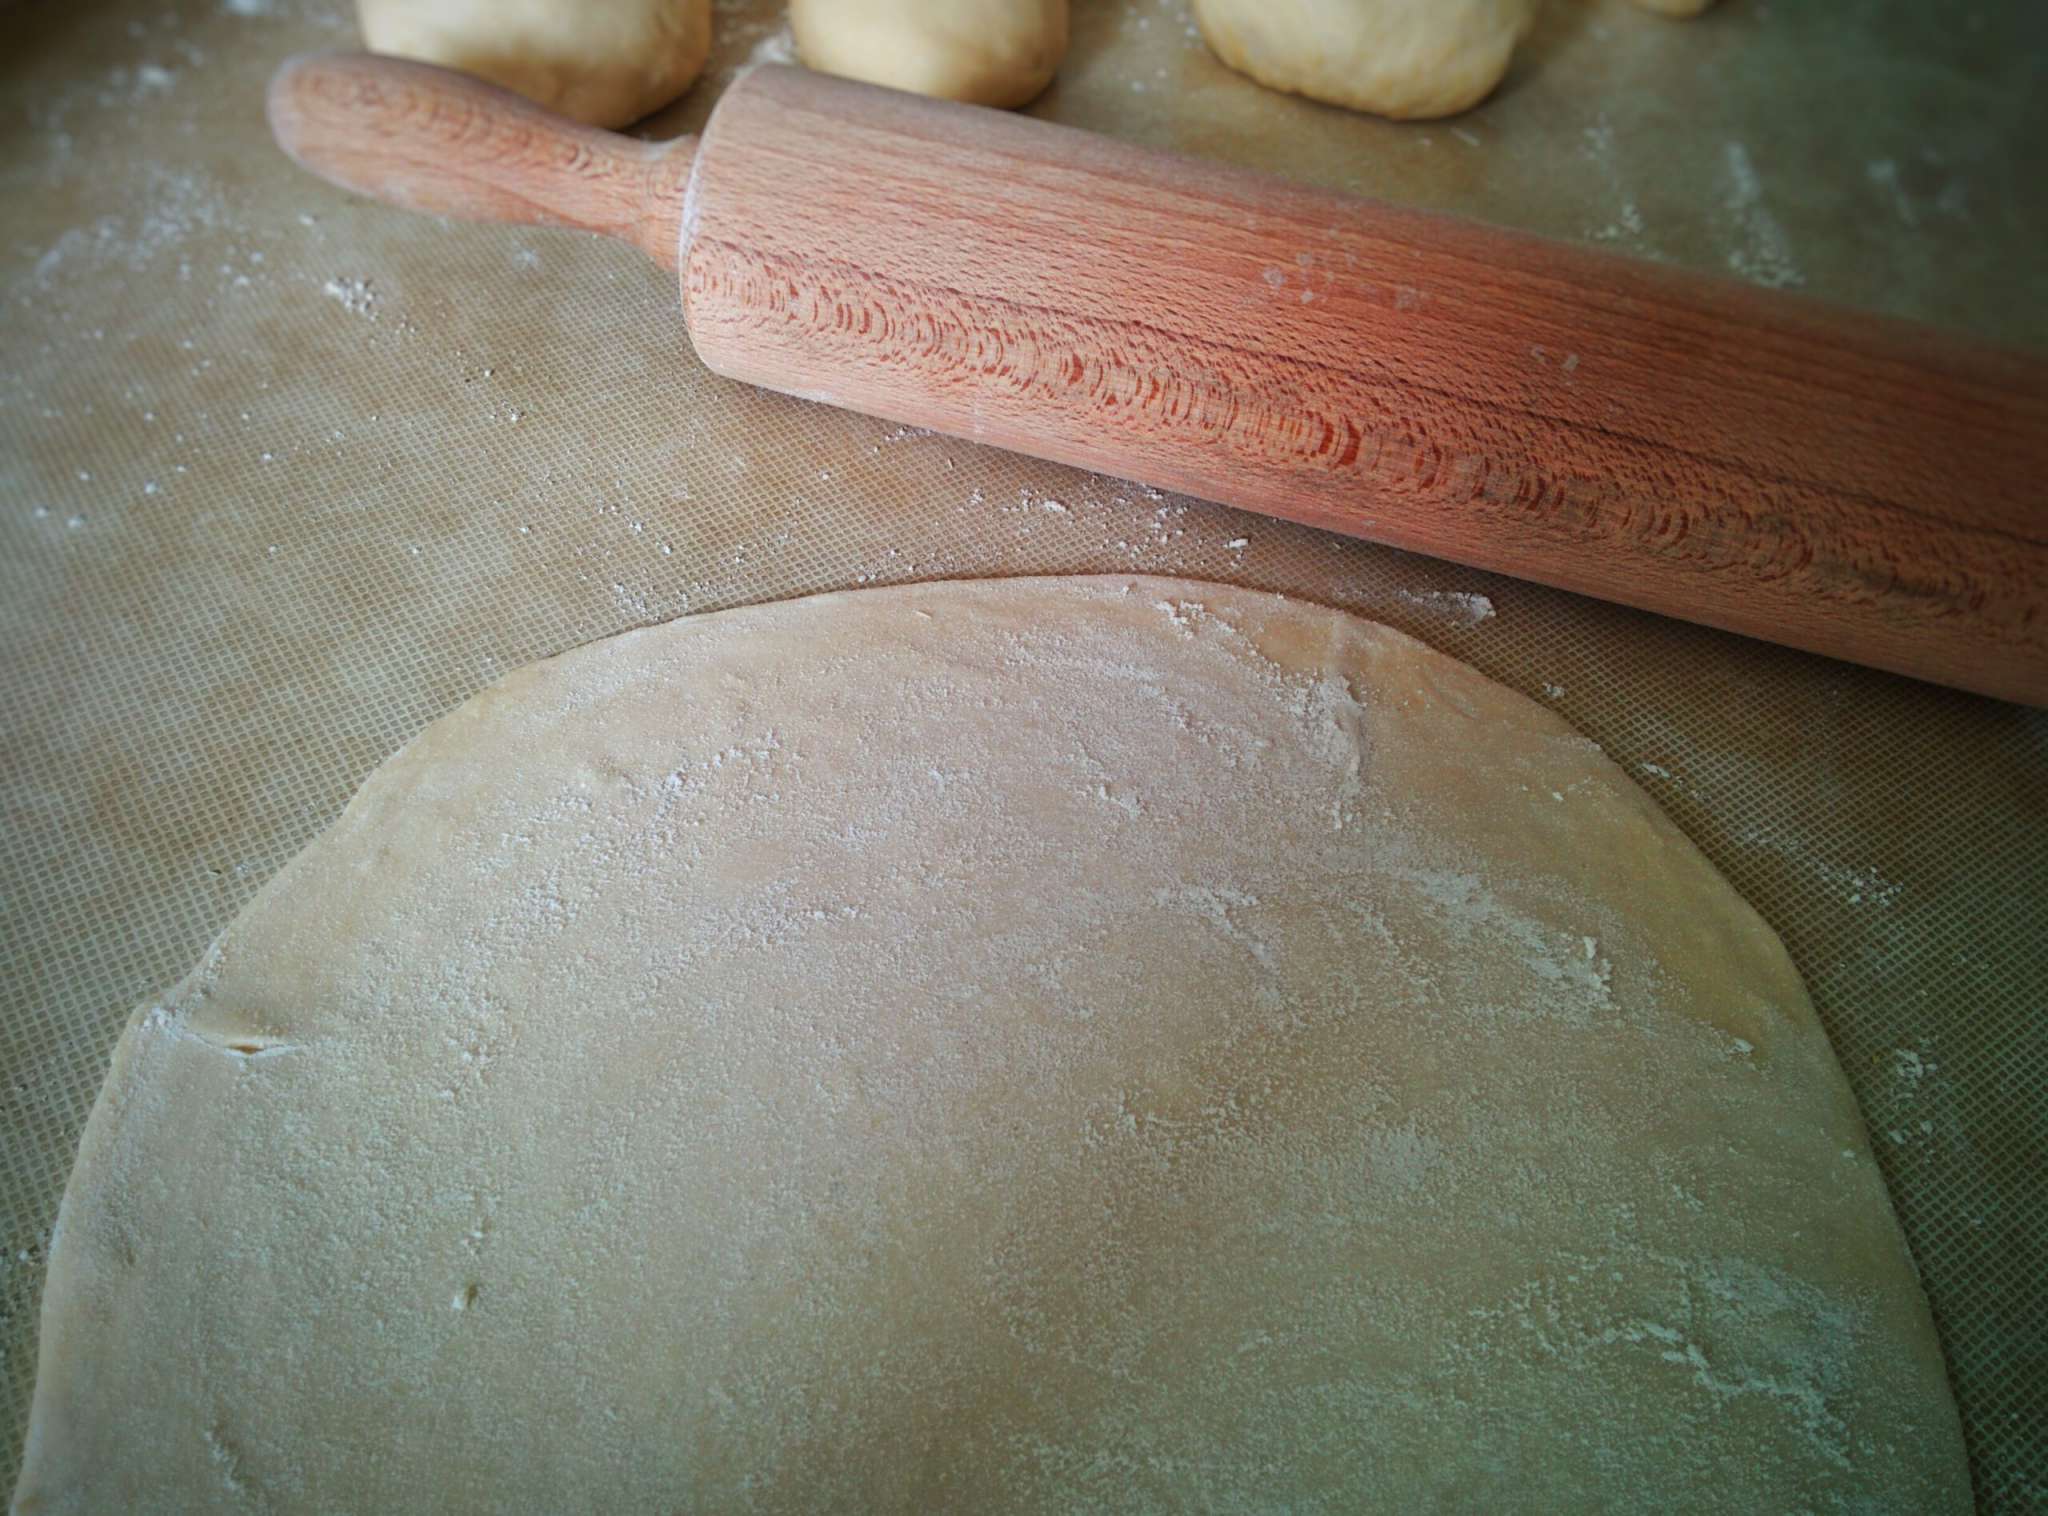 Info Shymkent - Kattama bread